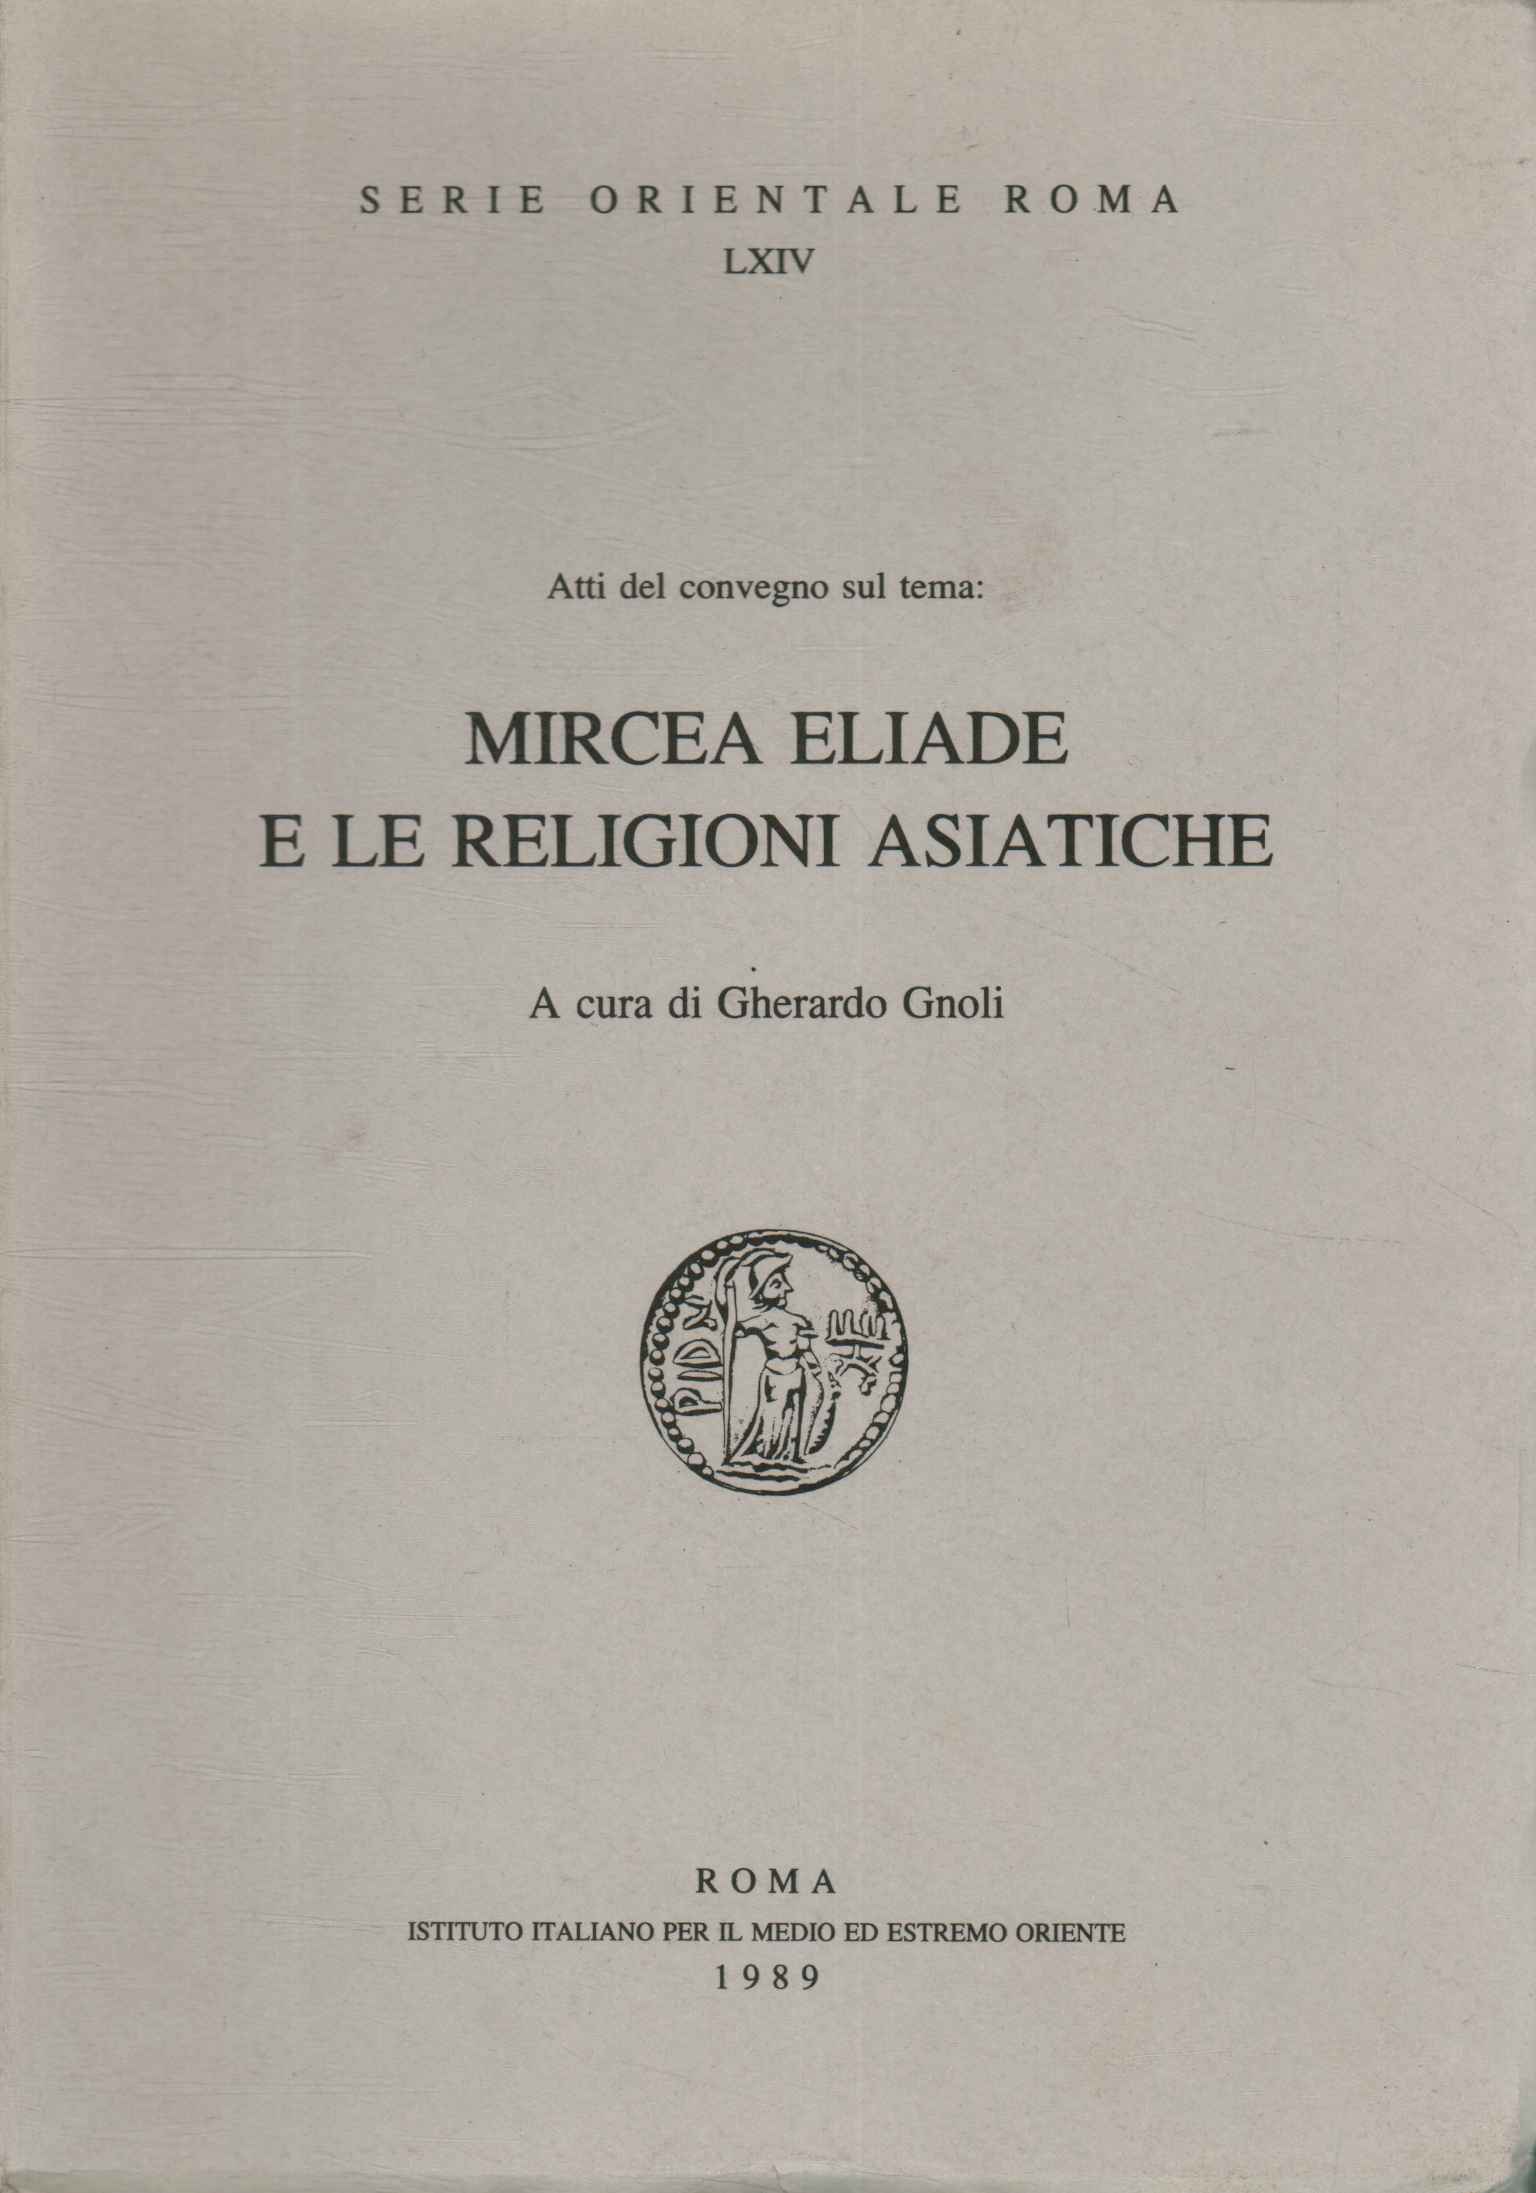 Mircea Eliade und asiatische Religionen